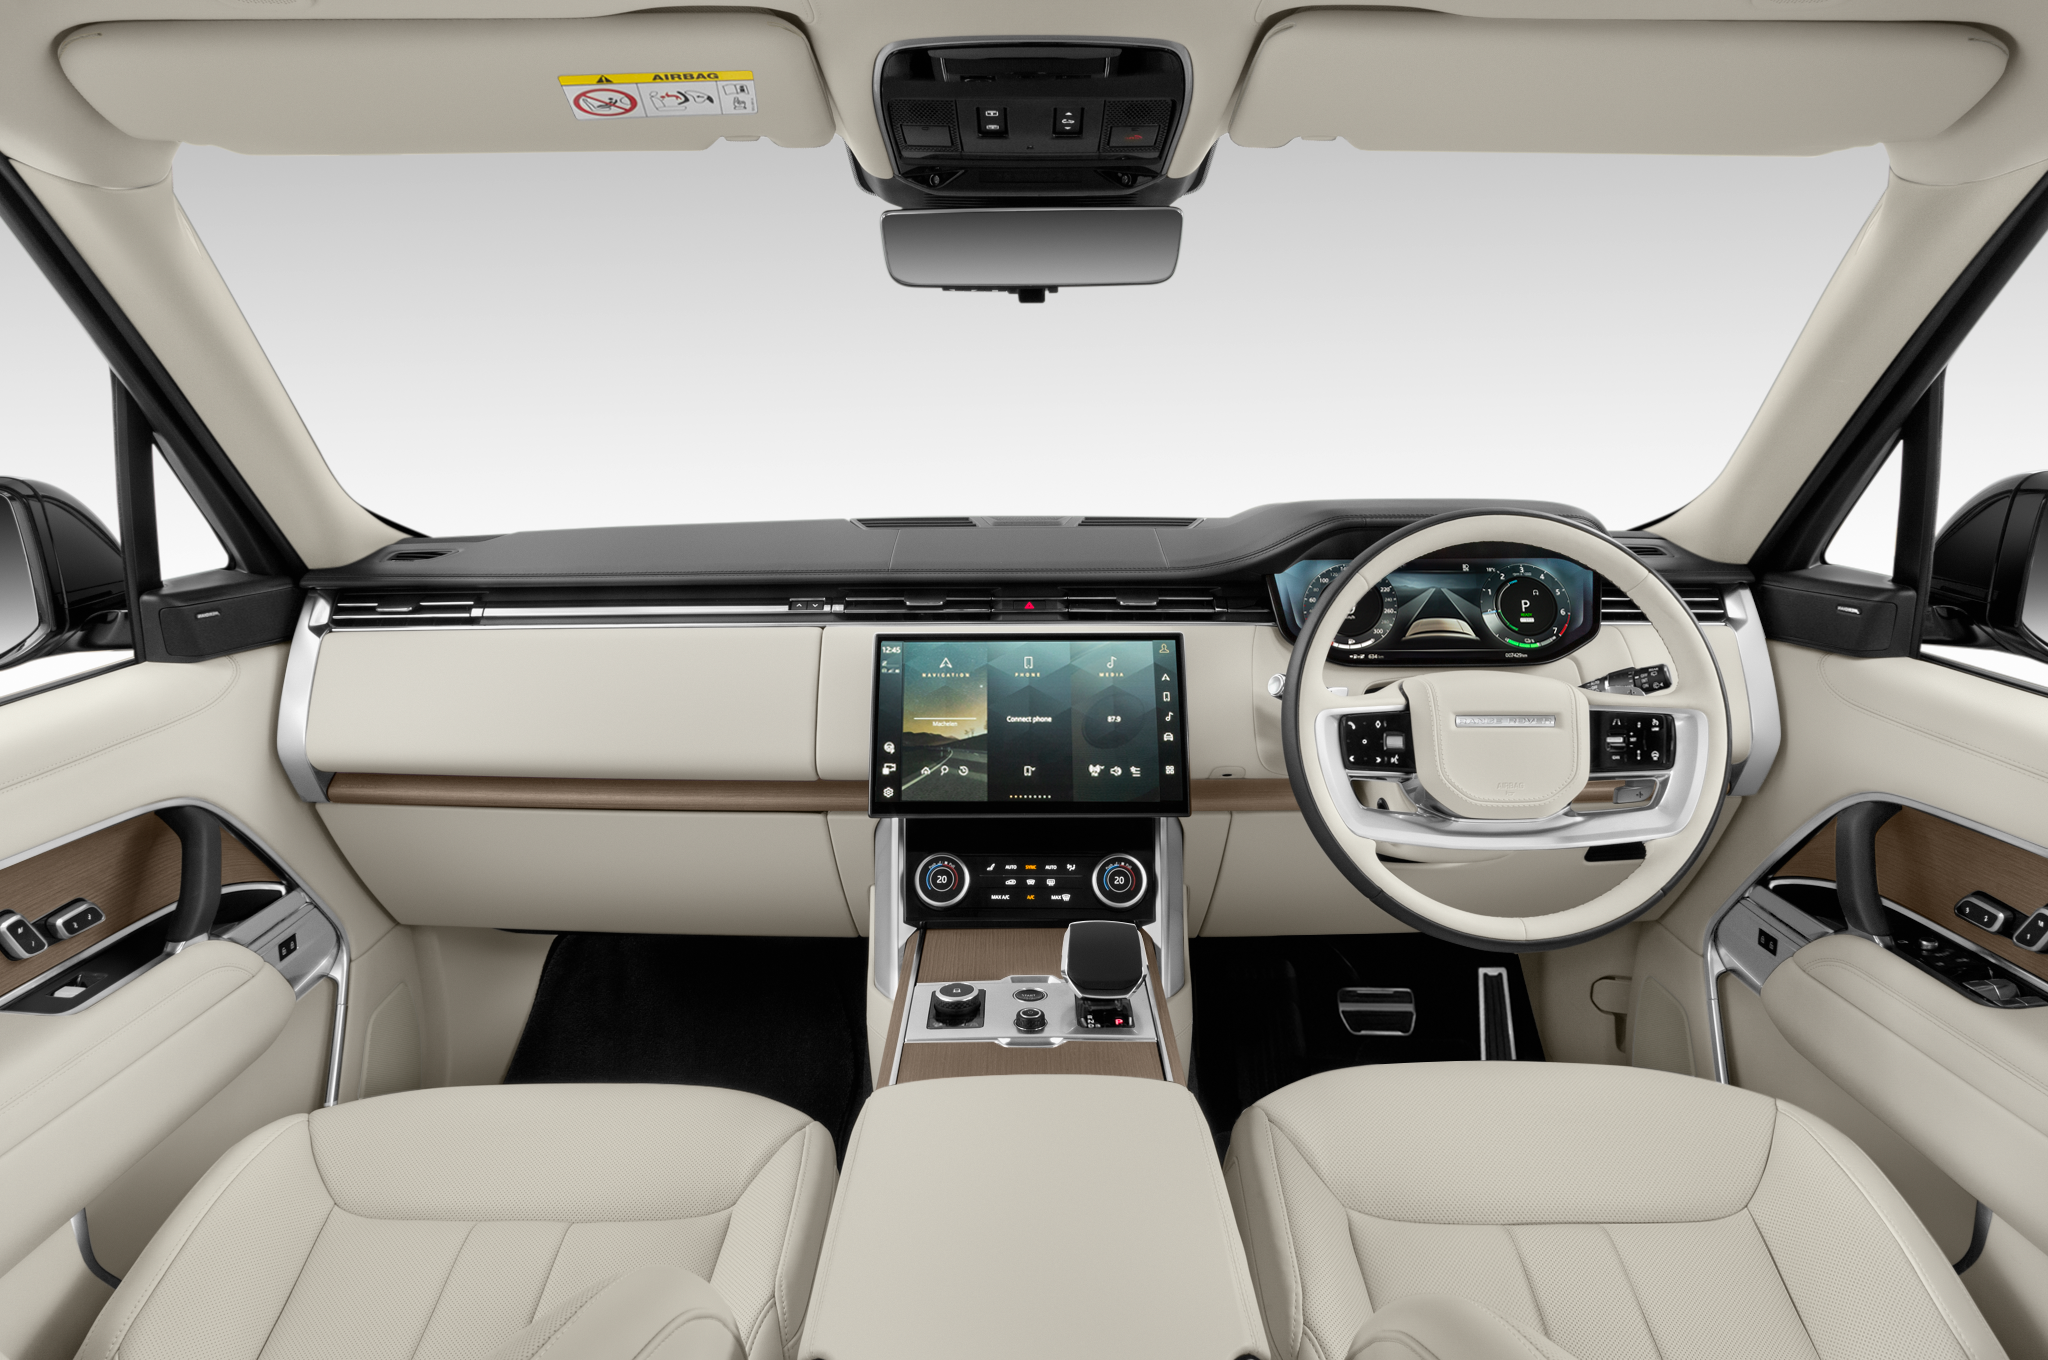 Range Rover Dashboard